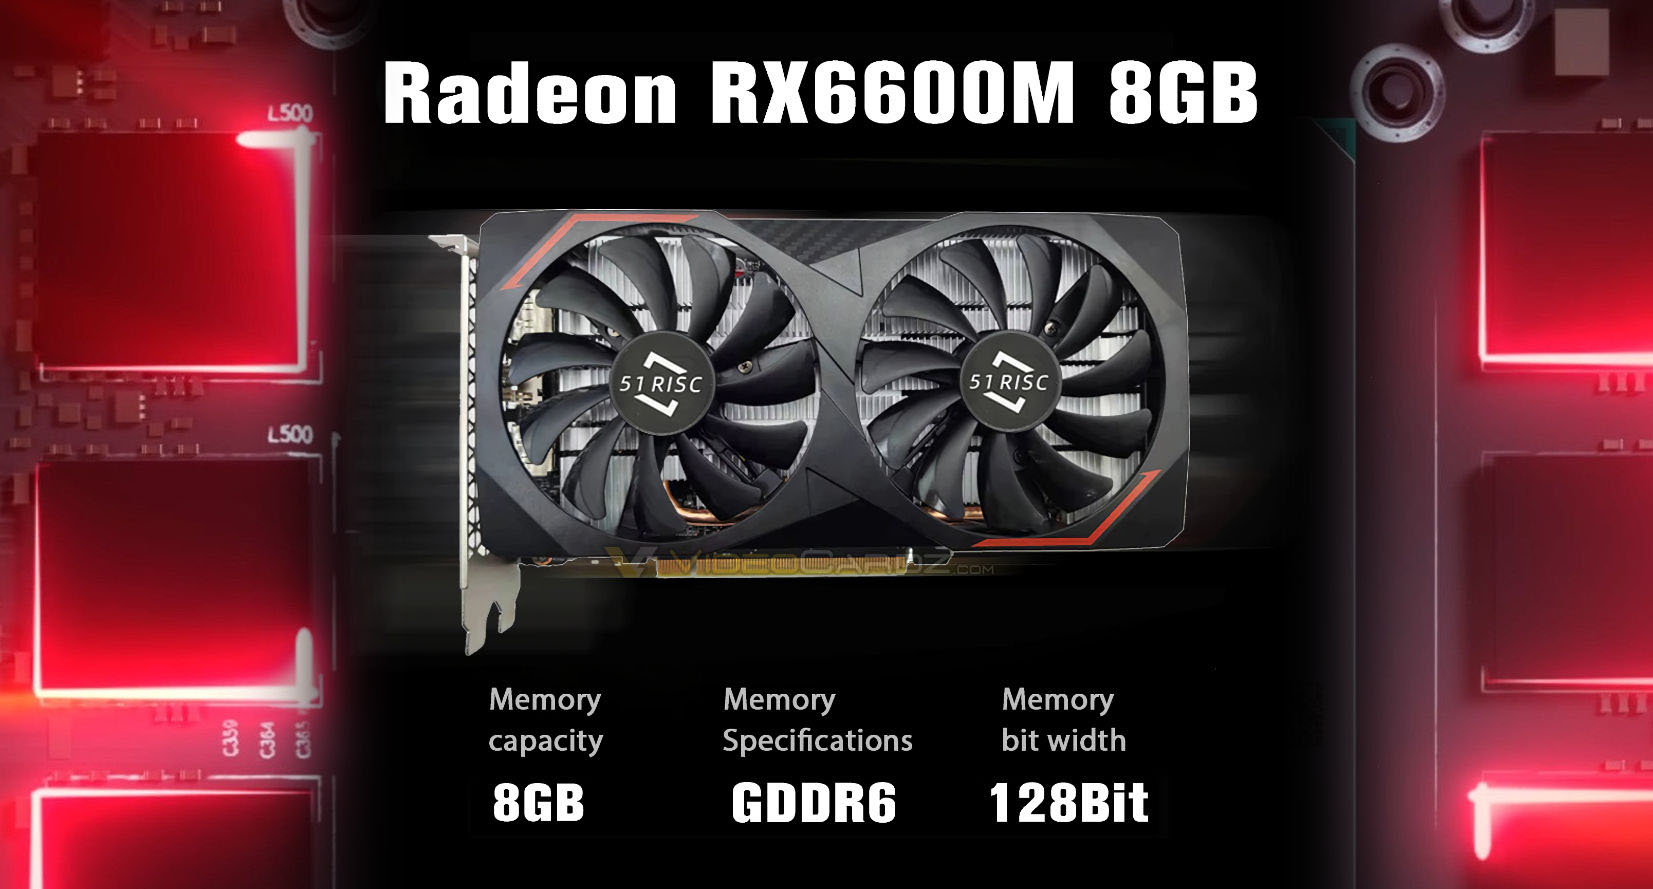 Las GPU móviles AMD Radeon RX 6600M se venden como tarjetas de escritorio mucho más baratas que las RX 6600